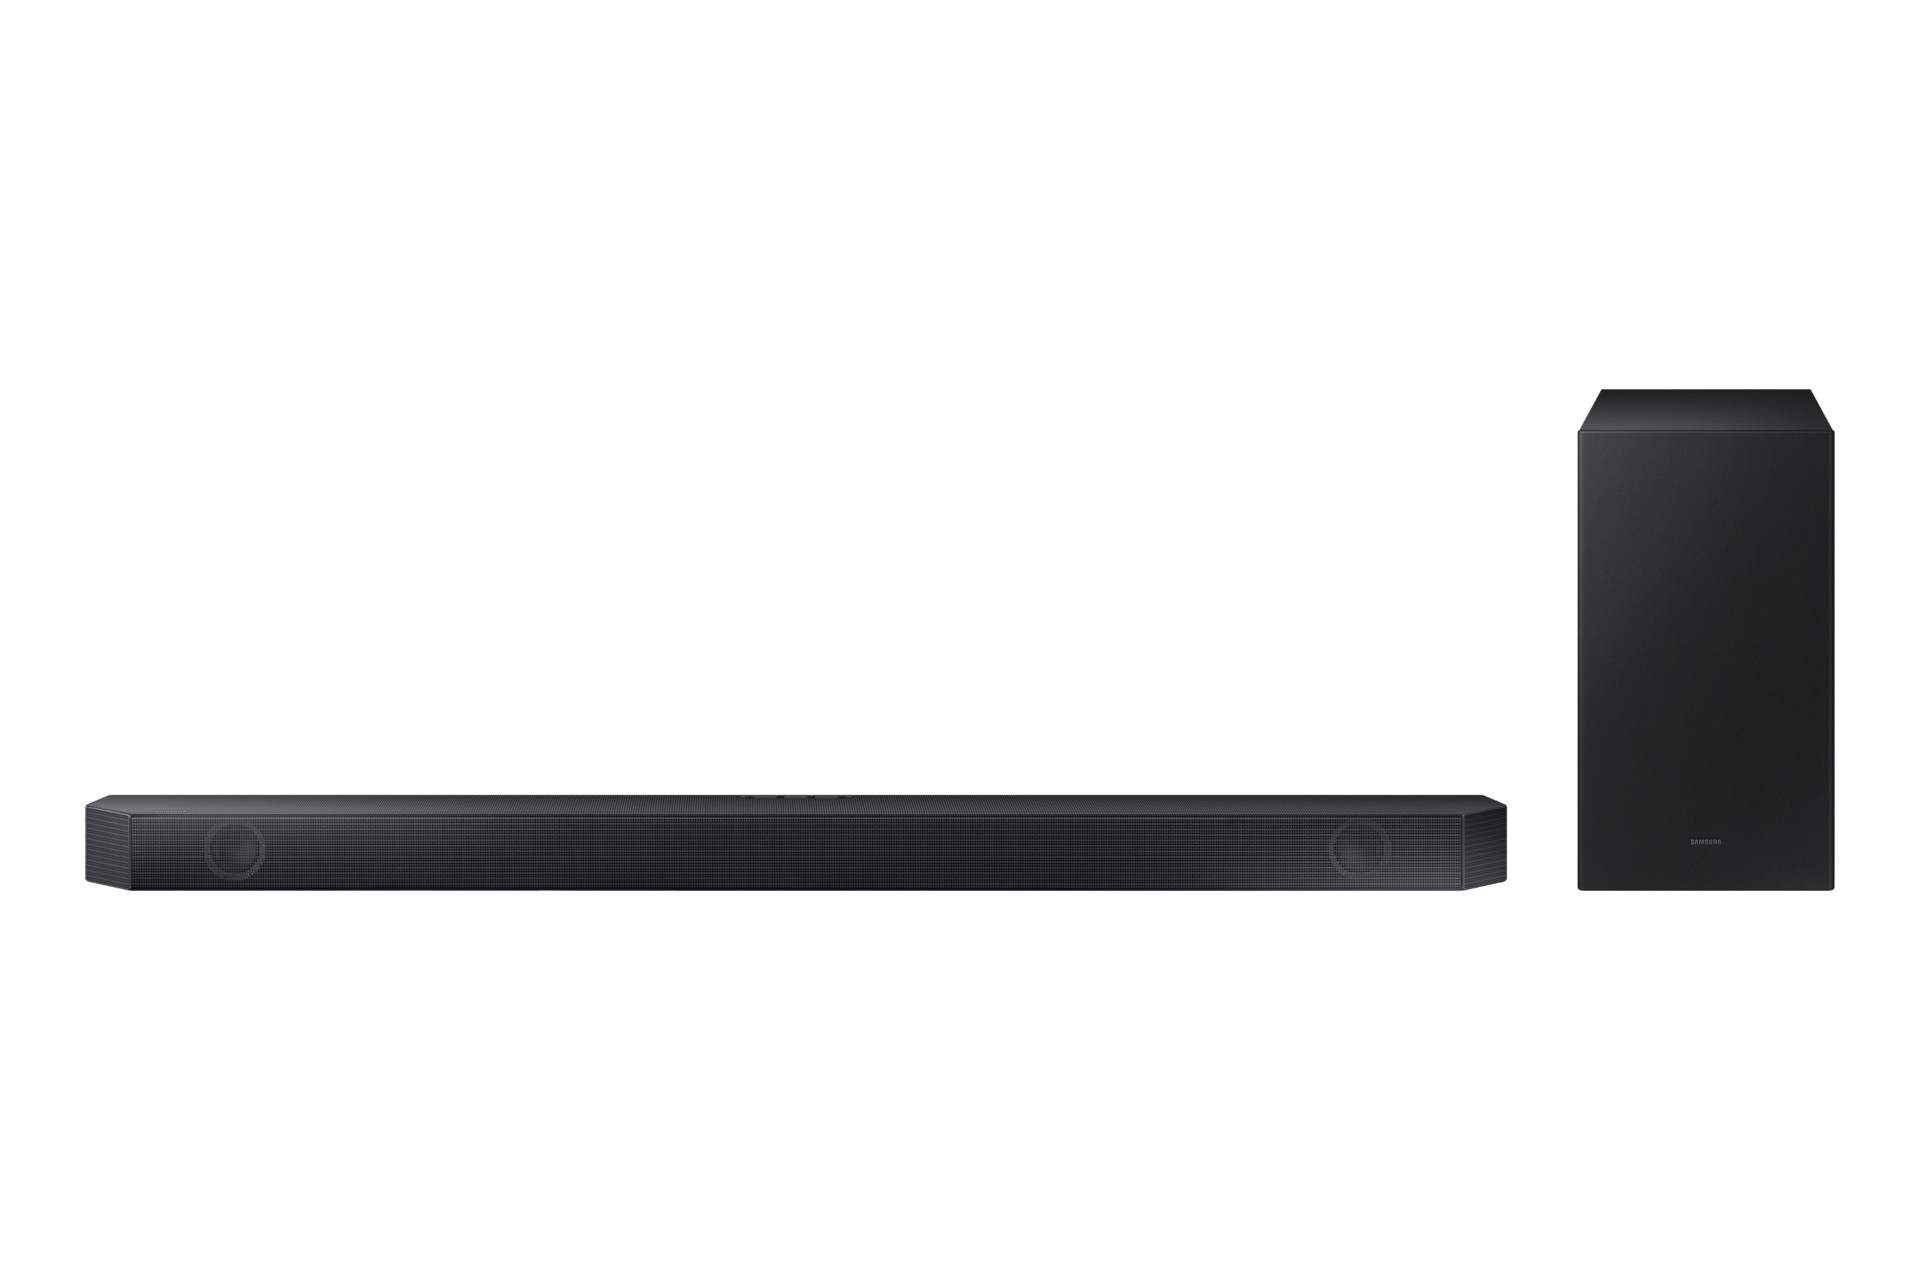 Samsung Premium Q-Series Soundbar HW-Q600C in Black